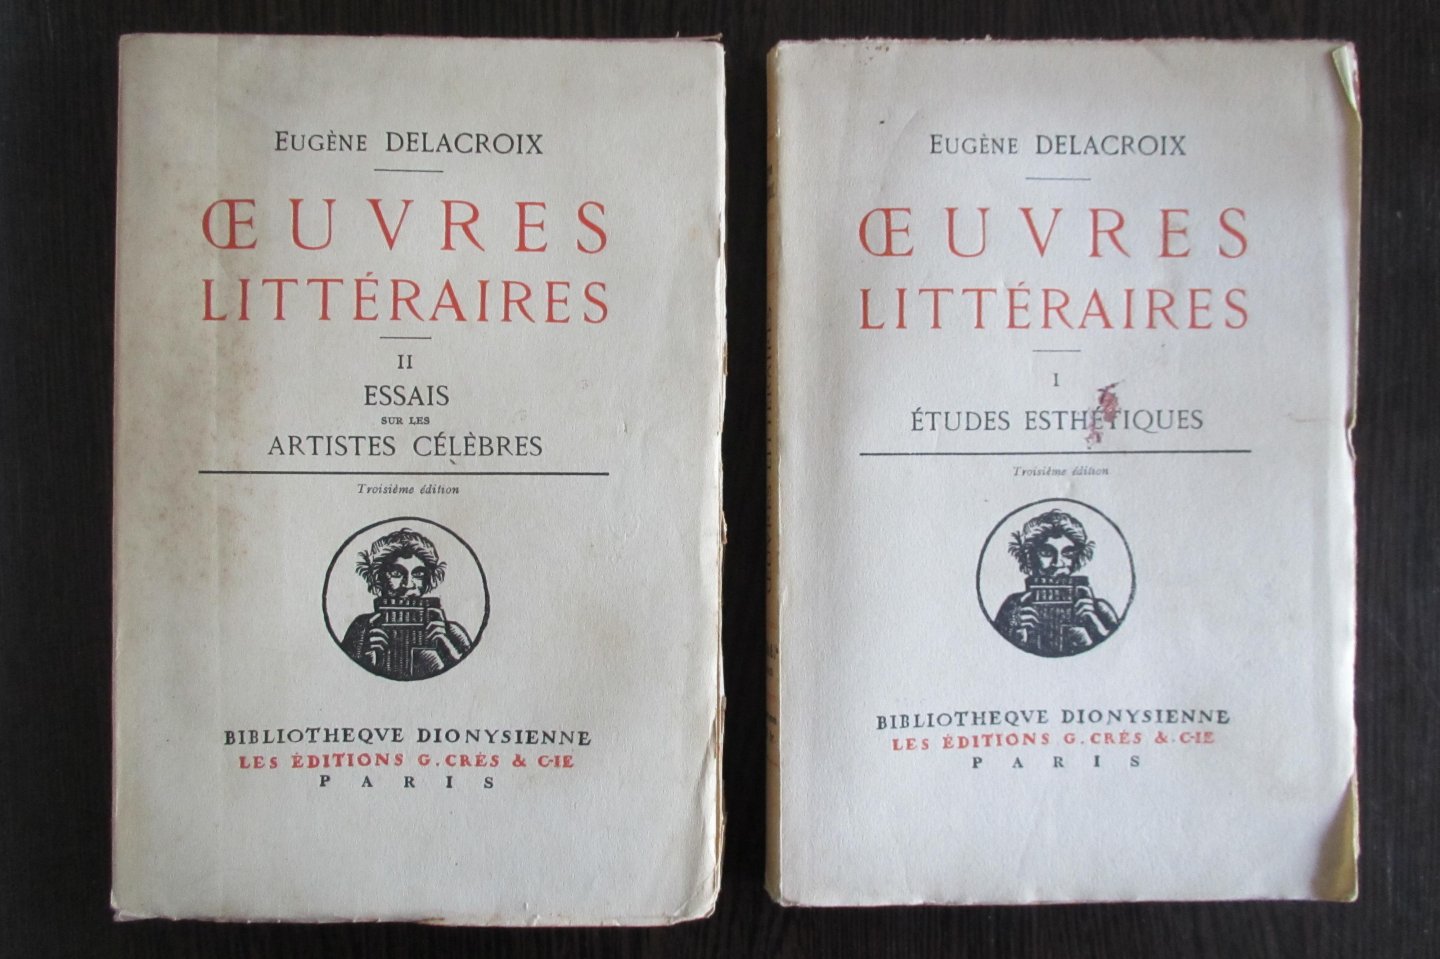 Delacroix, Eugene - Oeuvres litteraires - 2 delen. Etudes Esthetiques en Essais sur les Artistes celebres.